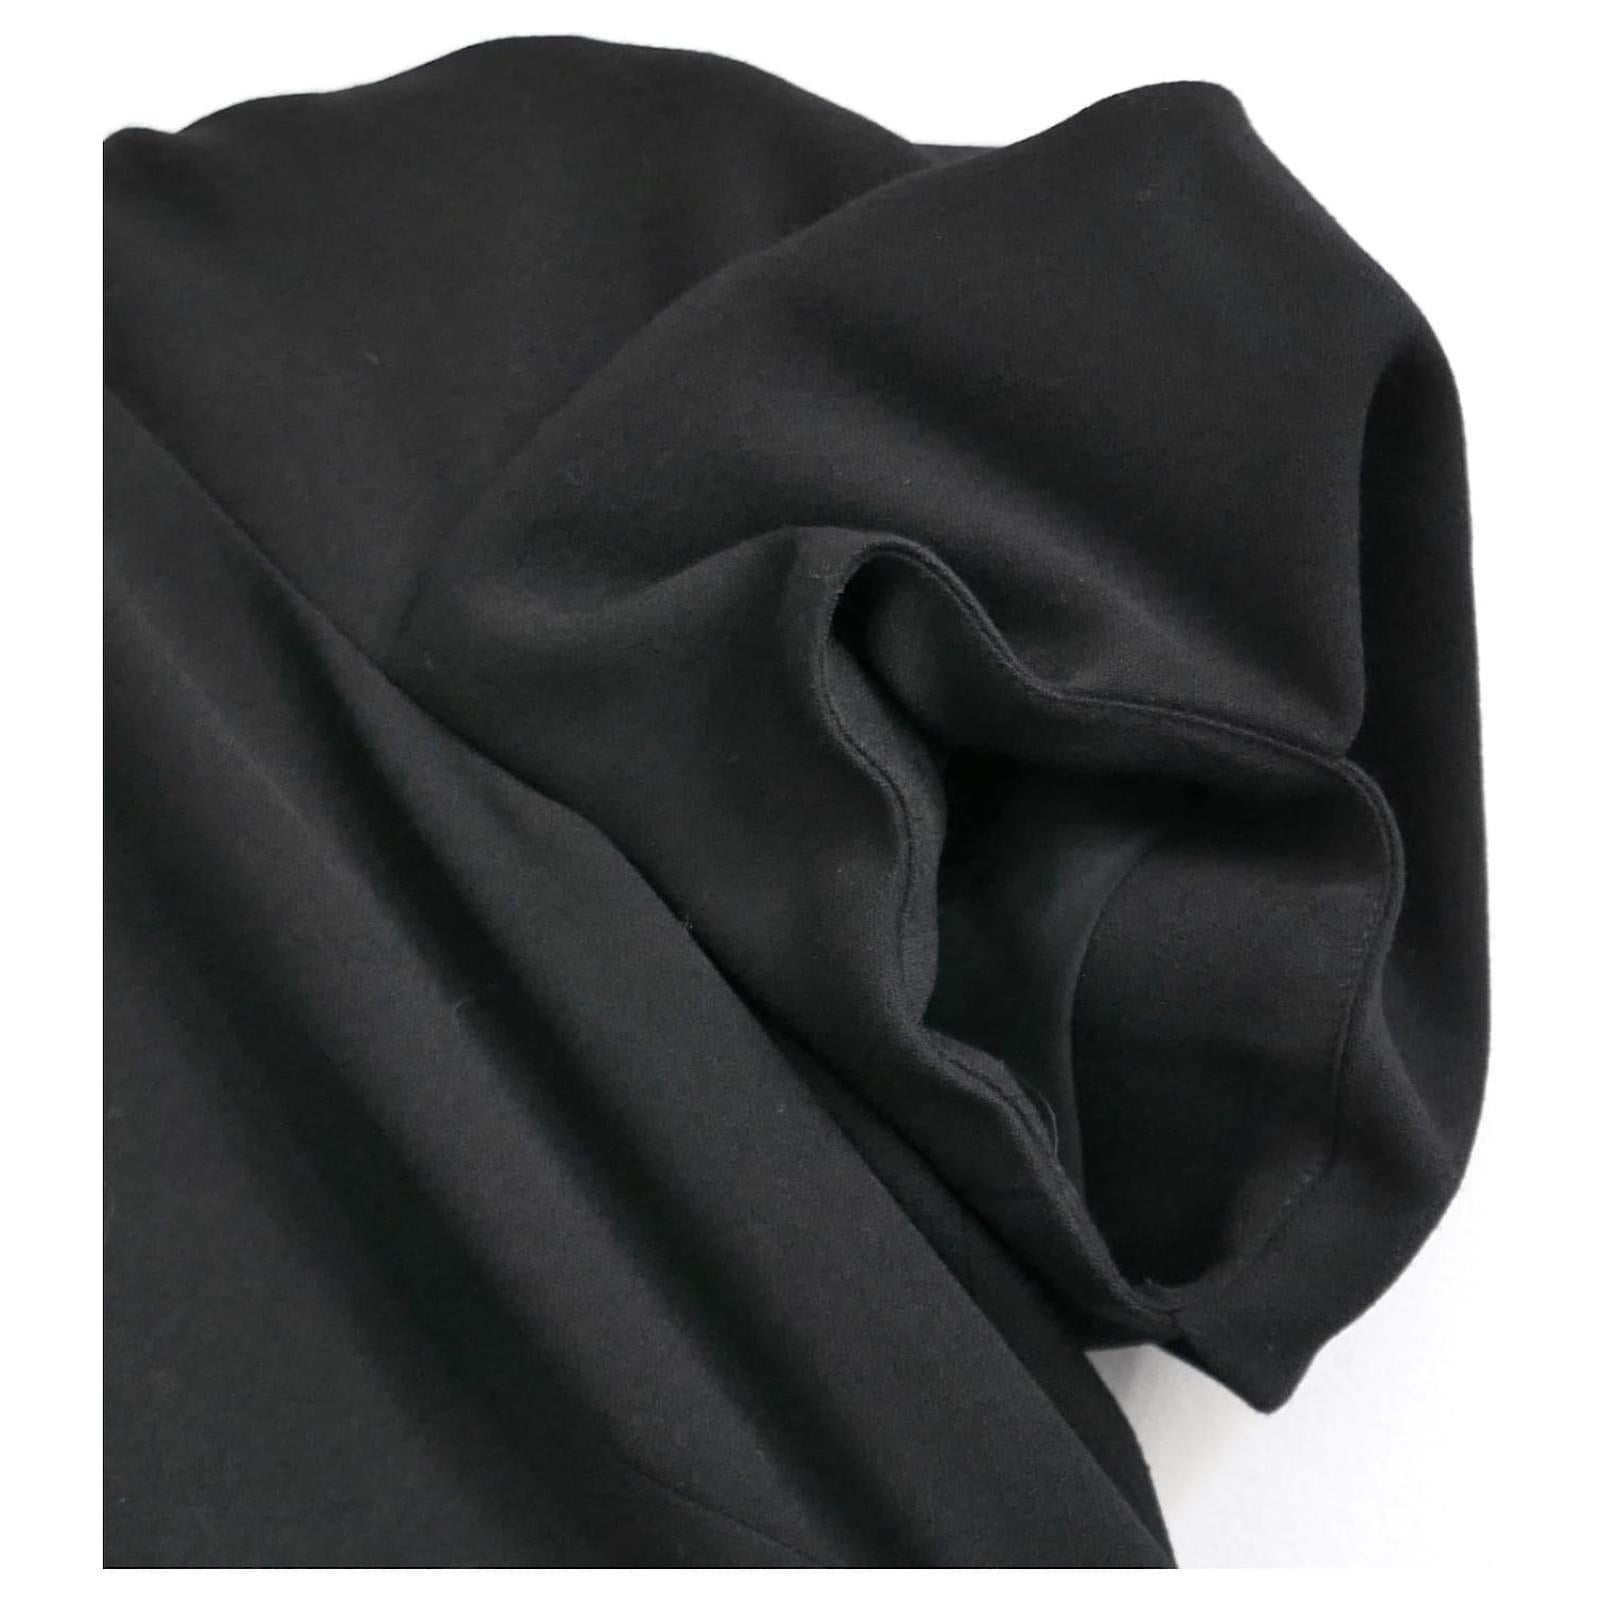 Superbe robe noire Alexander McQueen - neuve avec étiquettes. Confectionné en laine noire douce et doublé de soie mélangée, il est magnifiquement taillé avec des manches bouffantes volumineuses et des épaules torsadées. Fermeture éclair au dos.